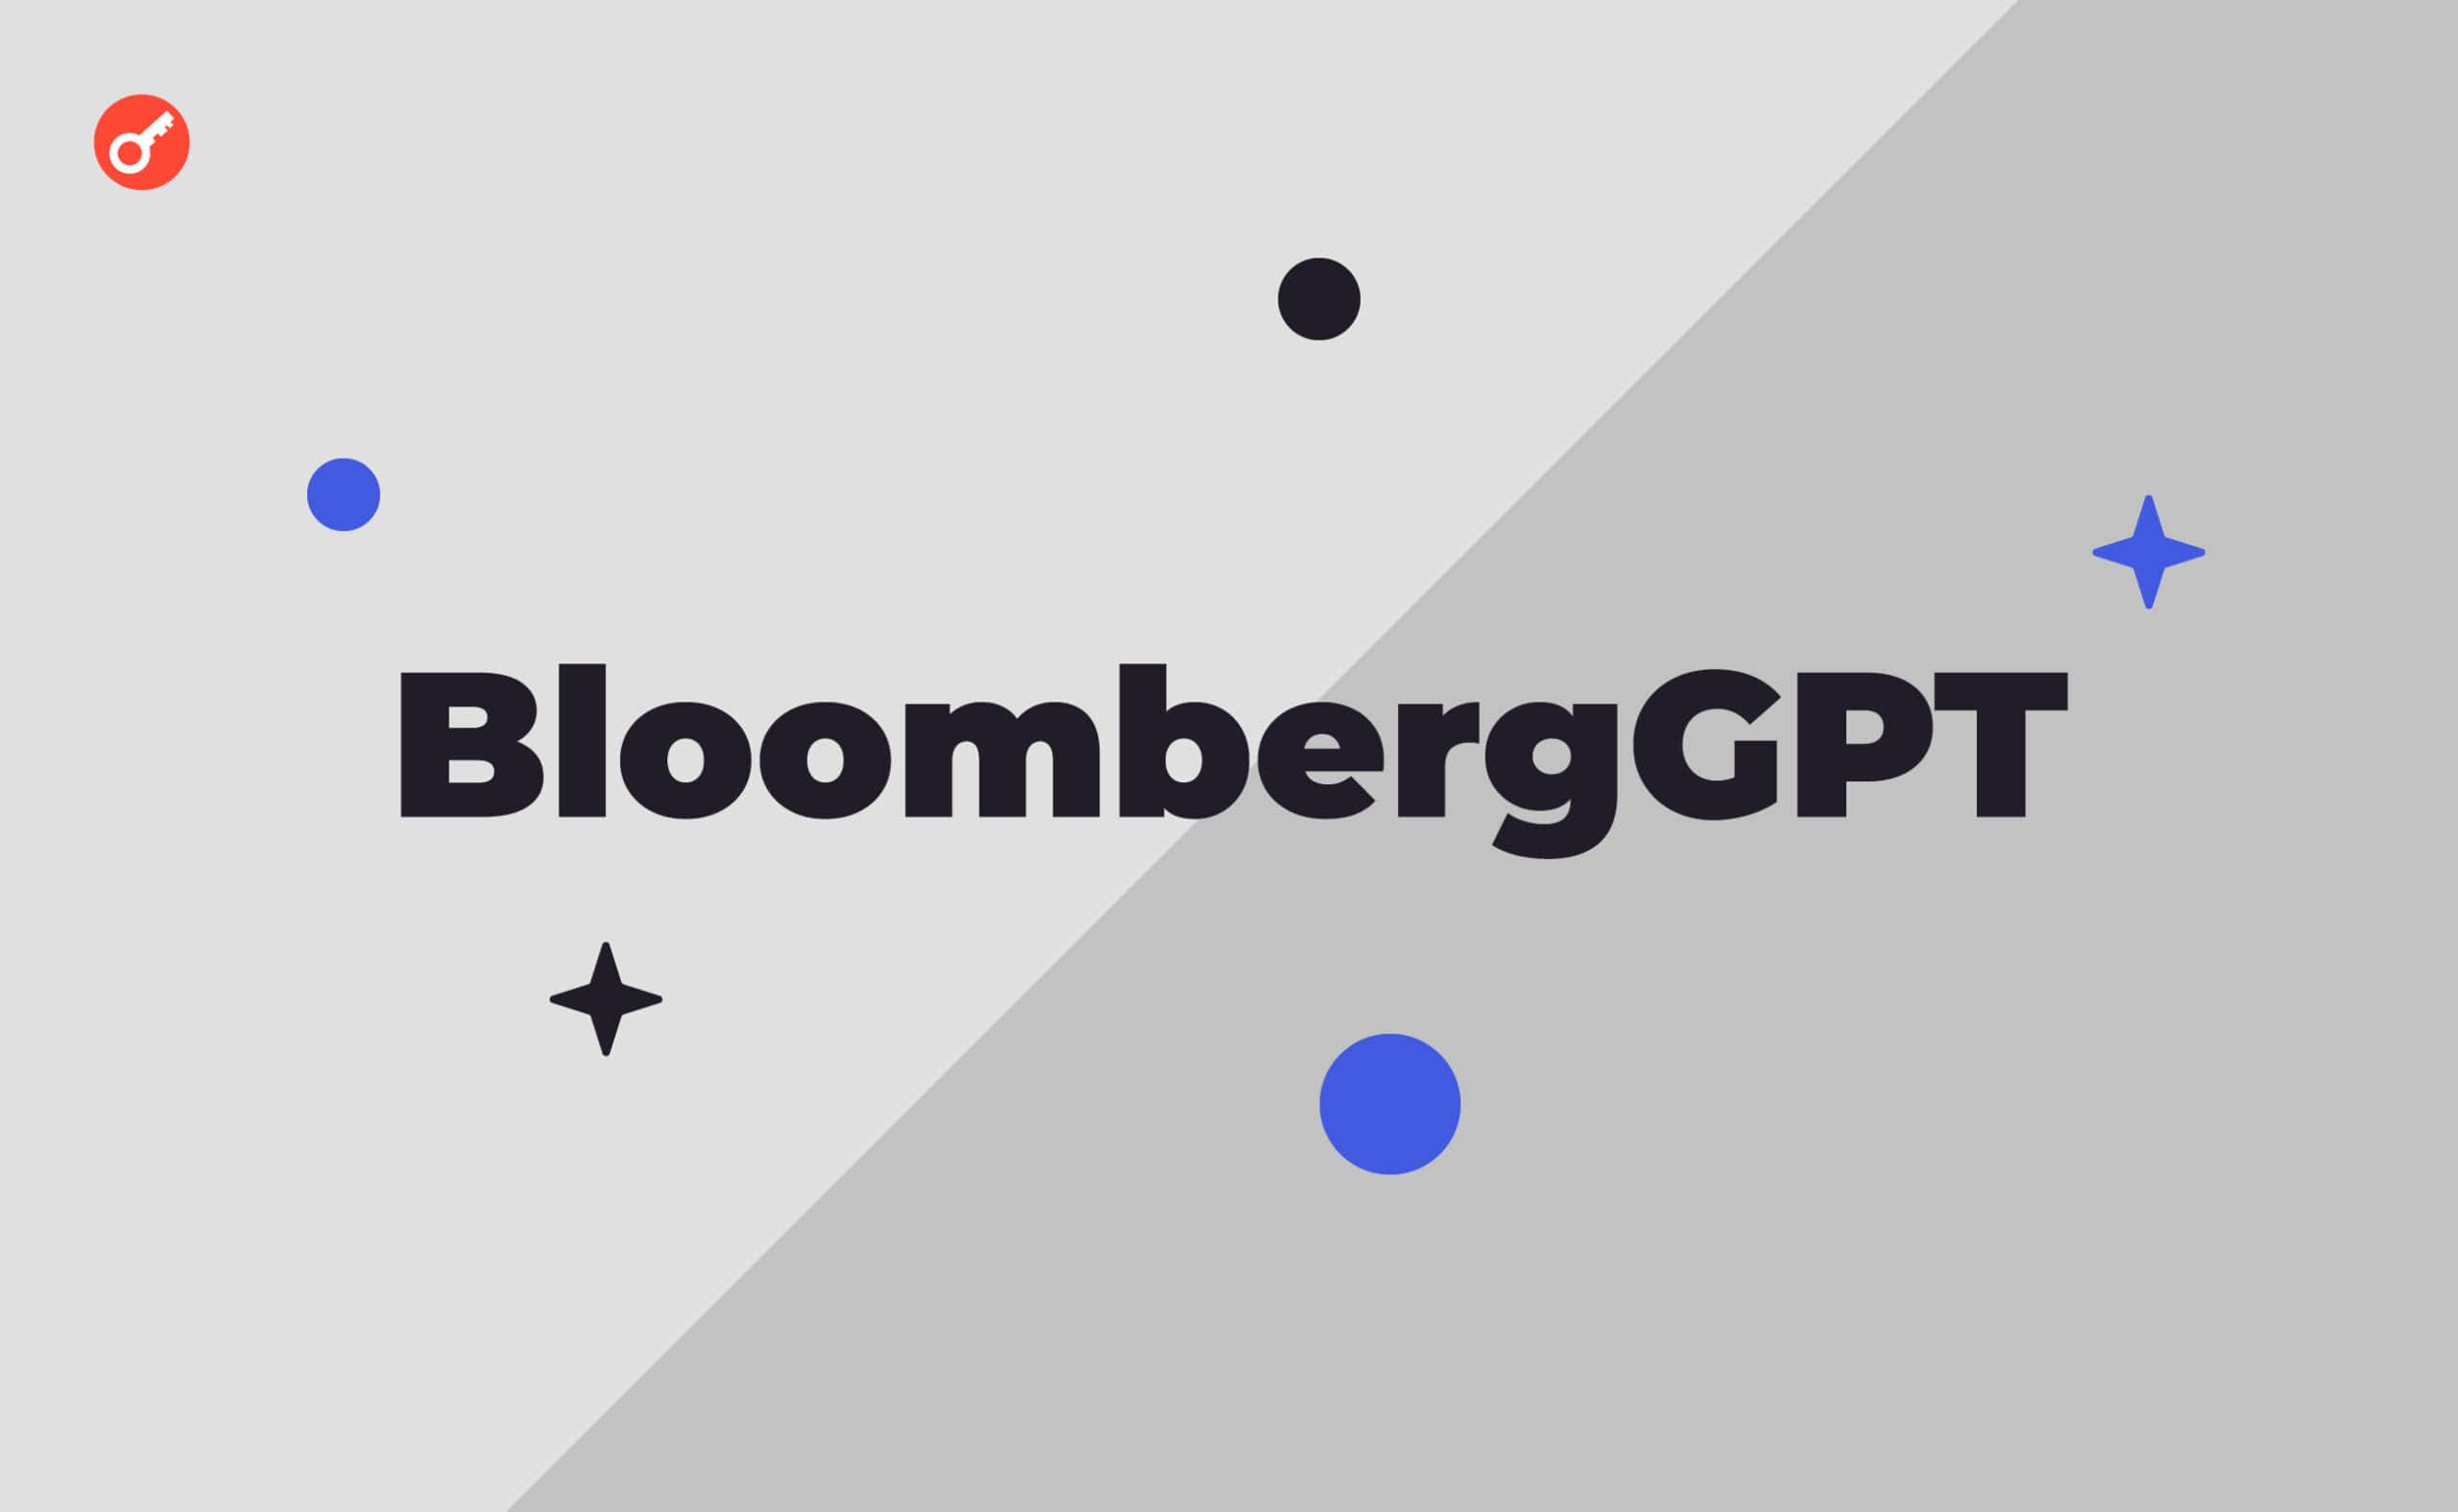 Bloomberg prezentuje sieć neuronową BloombergGPT. Główny kolaż wiadomości.